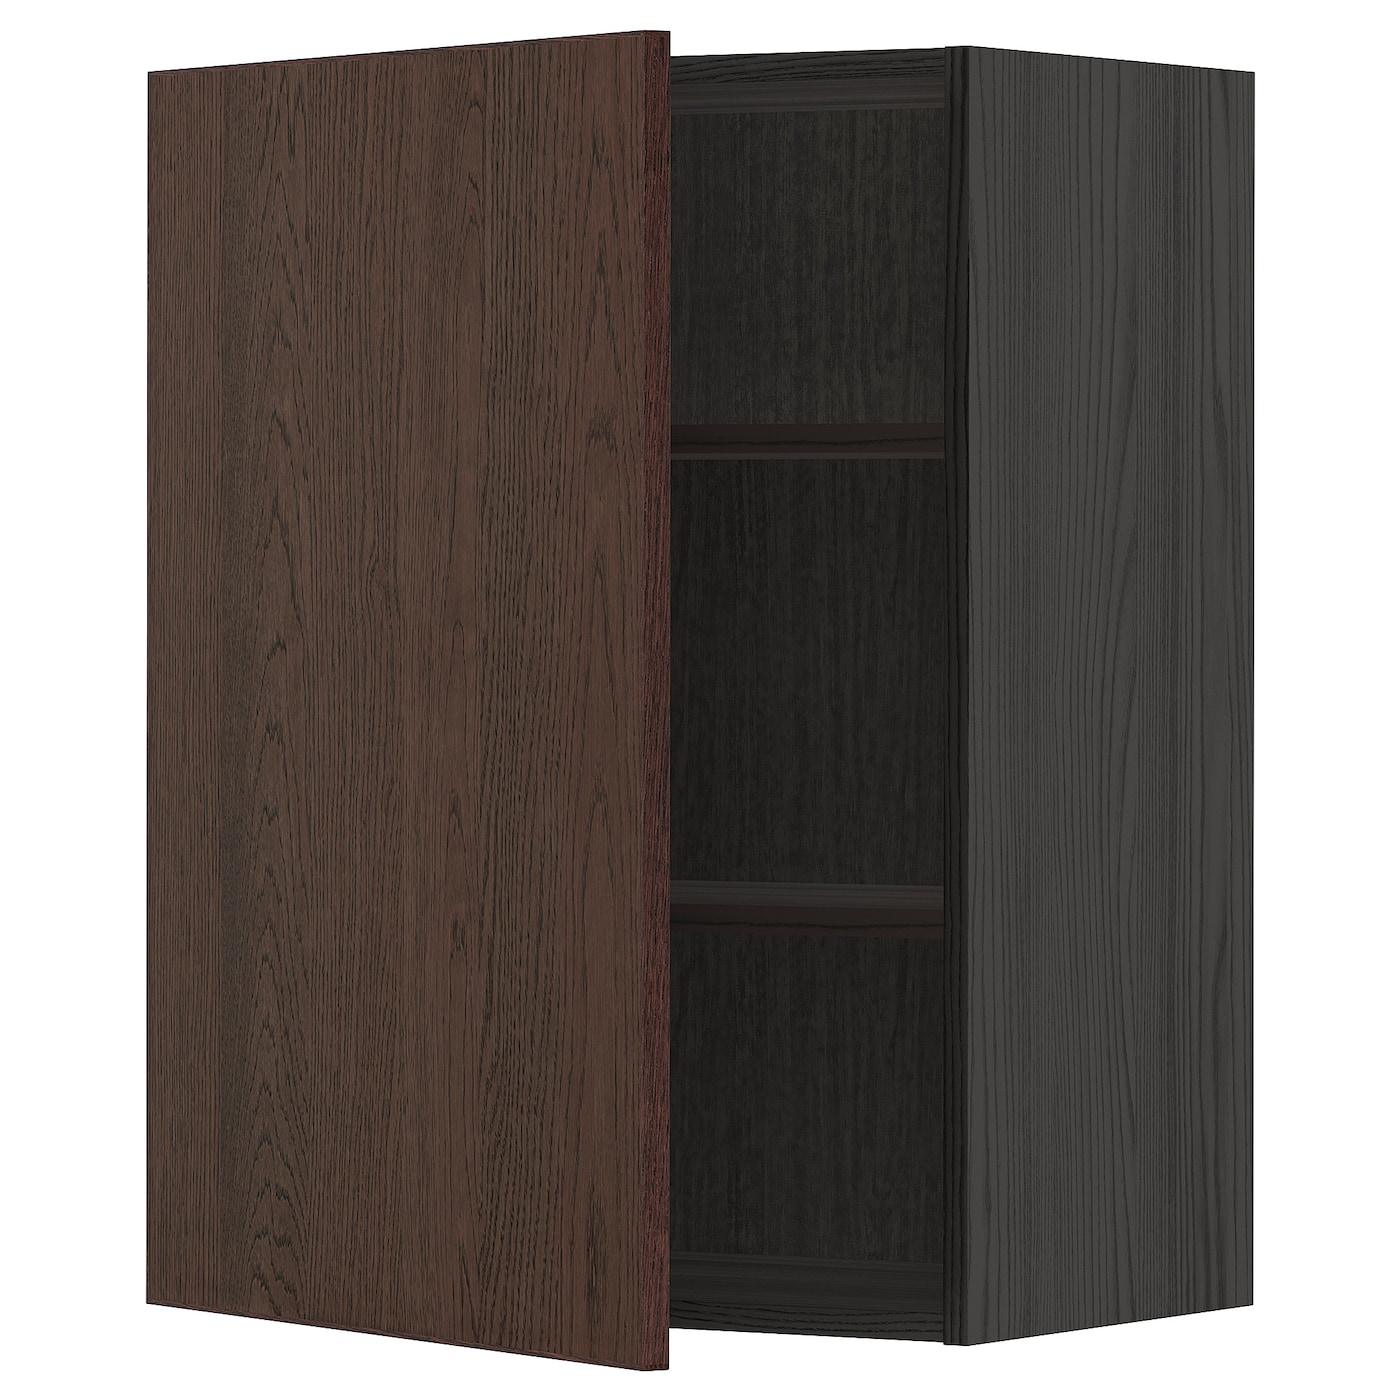 Навесной шкаф с полкой - METOD IKEA/ МЕТОД ИКЕА, 80х60 см, черный/коричневый